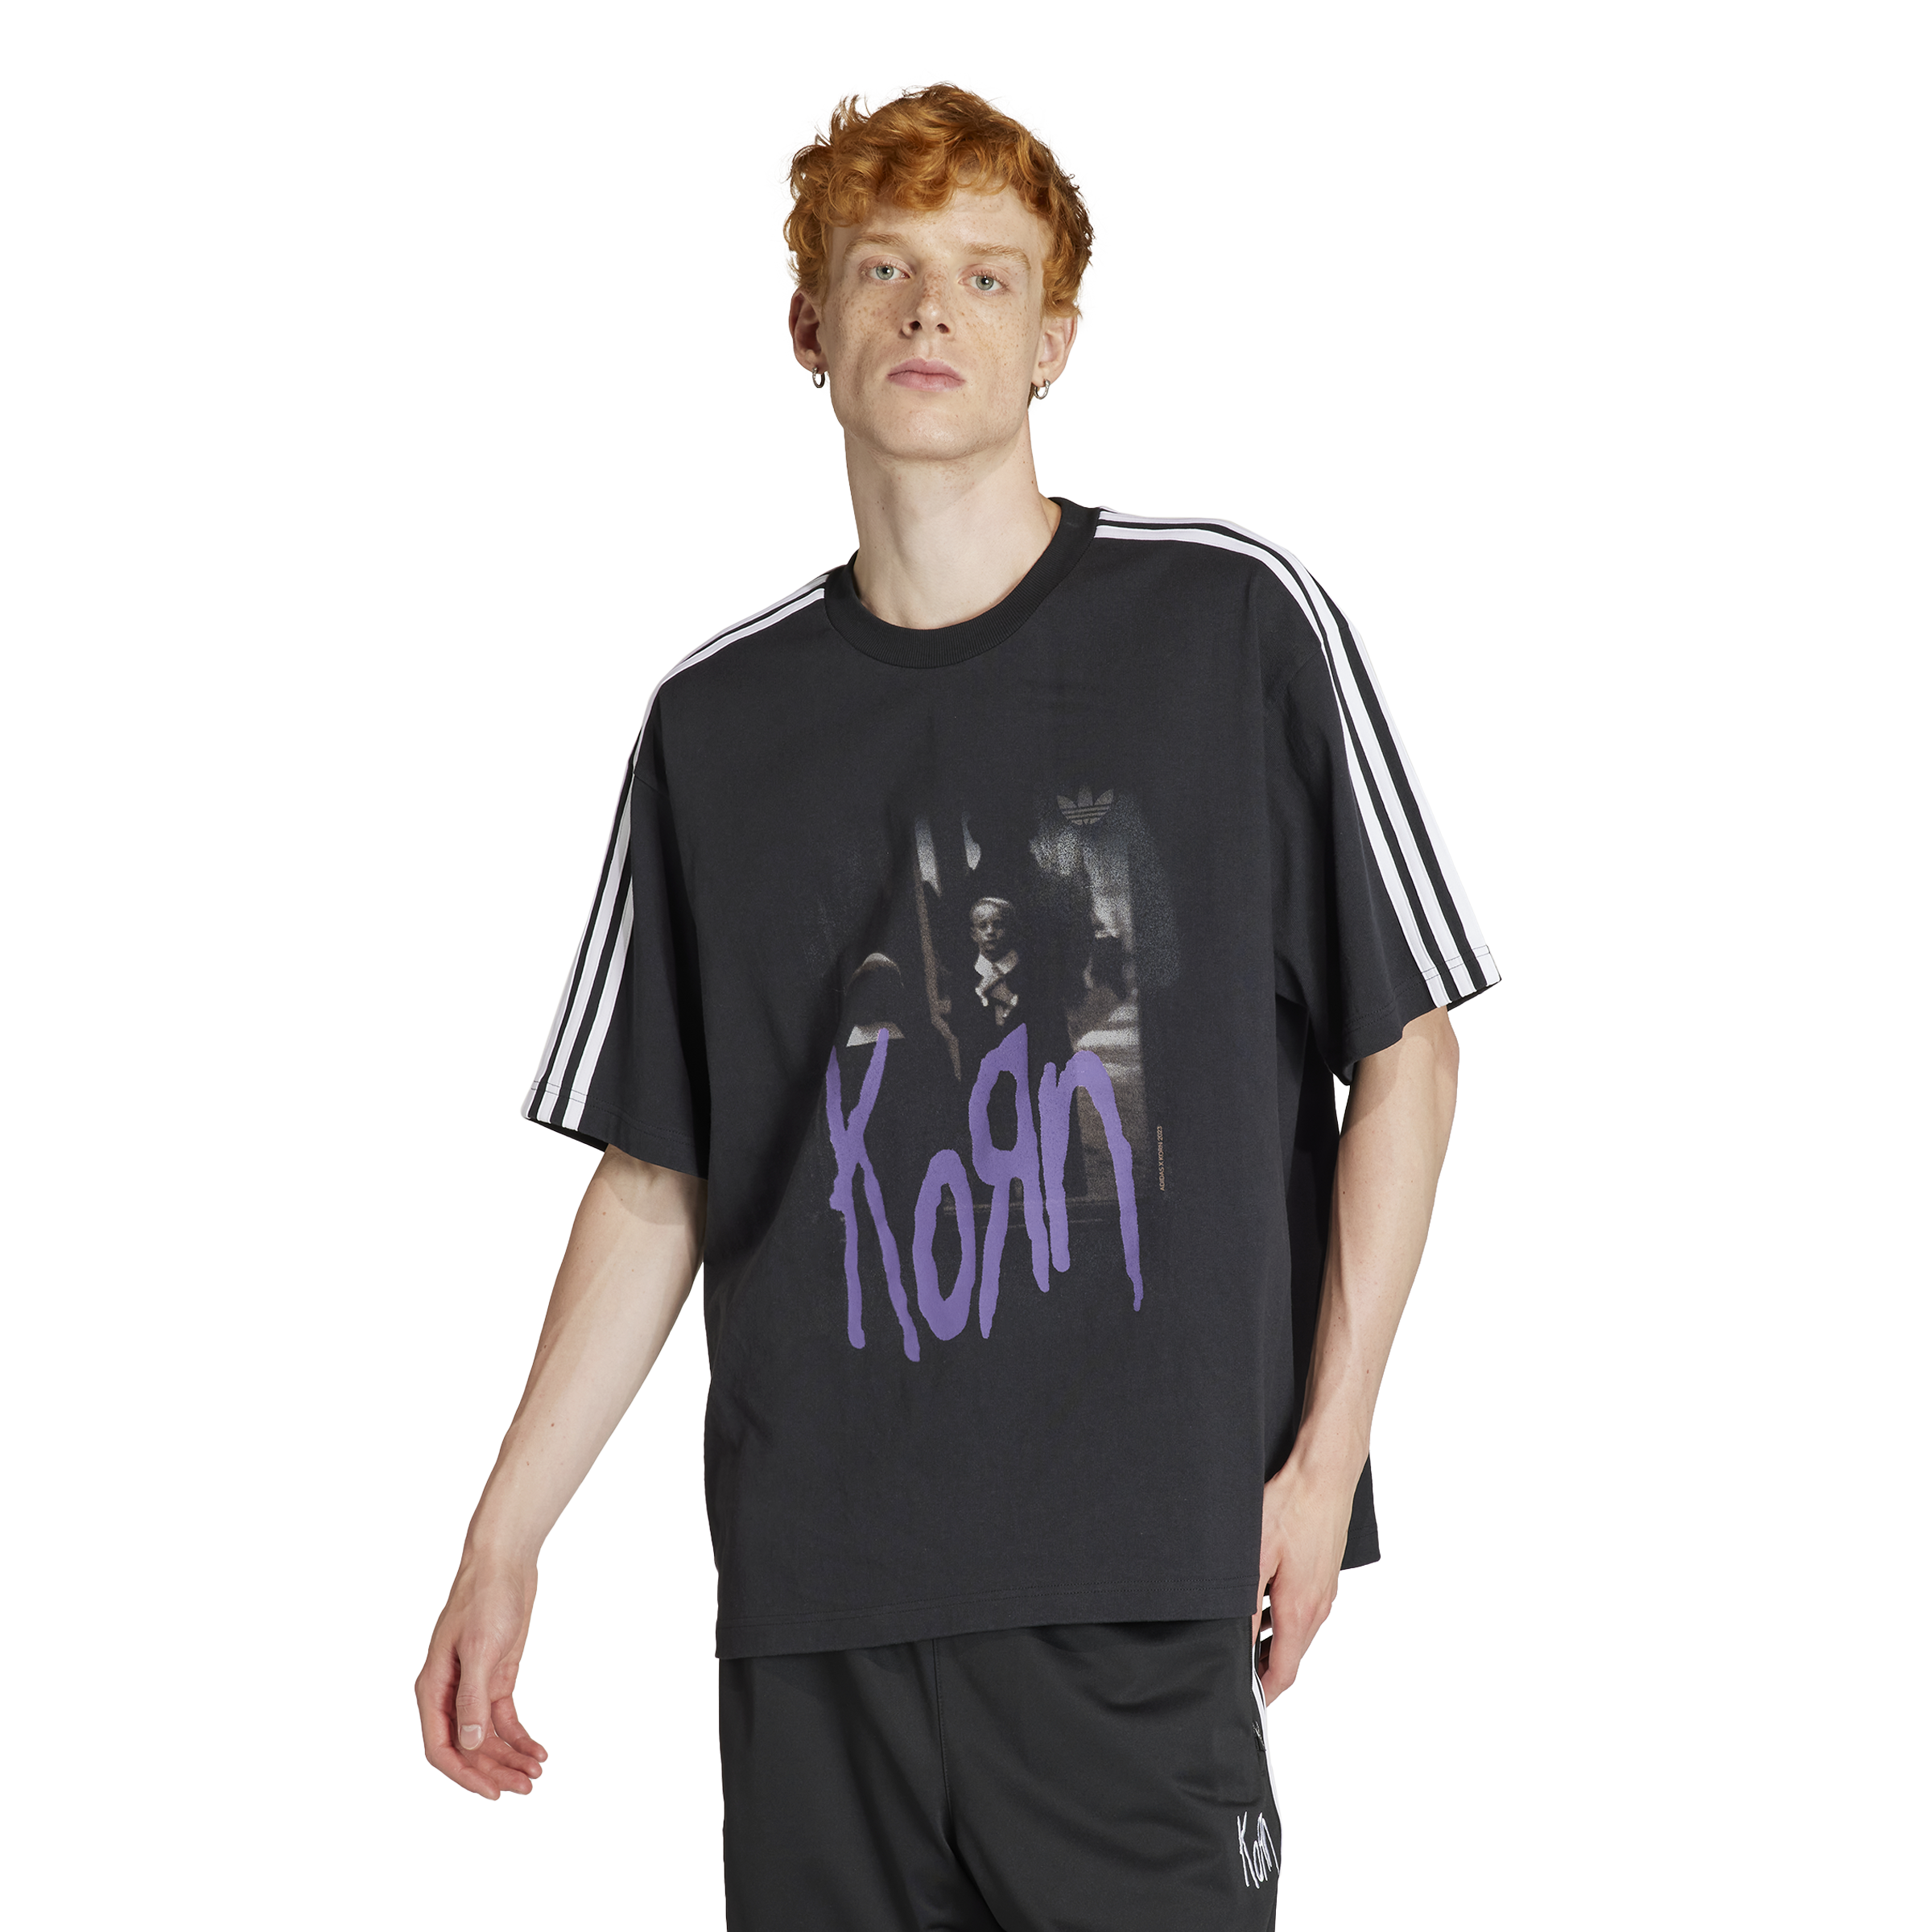 【値下げ不可】adidas x Korn T-Shirt size XL